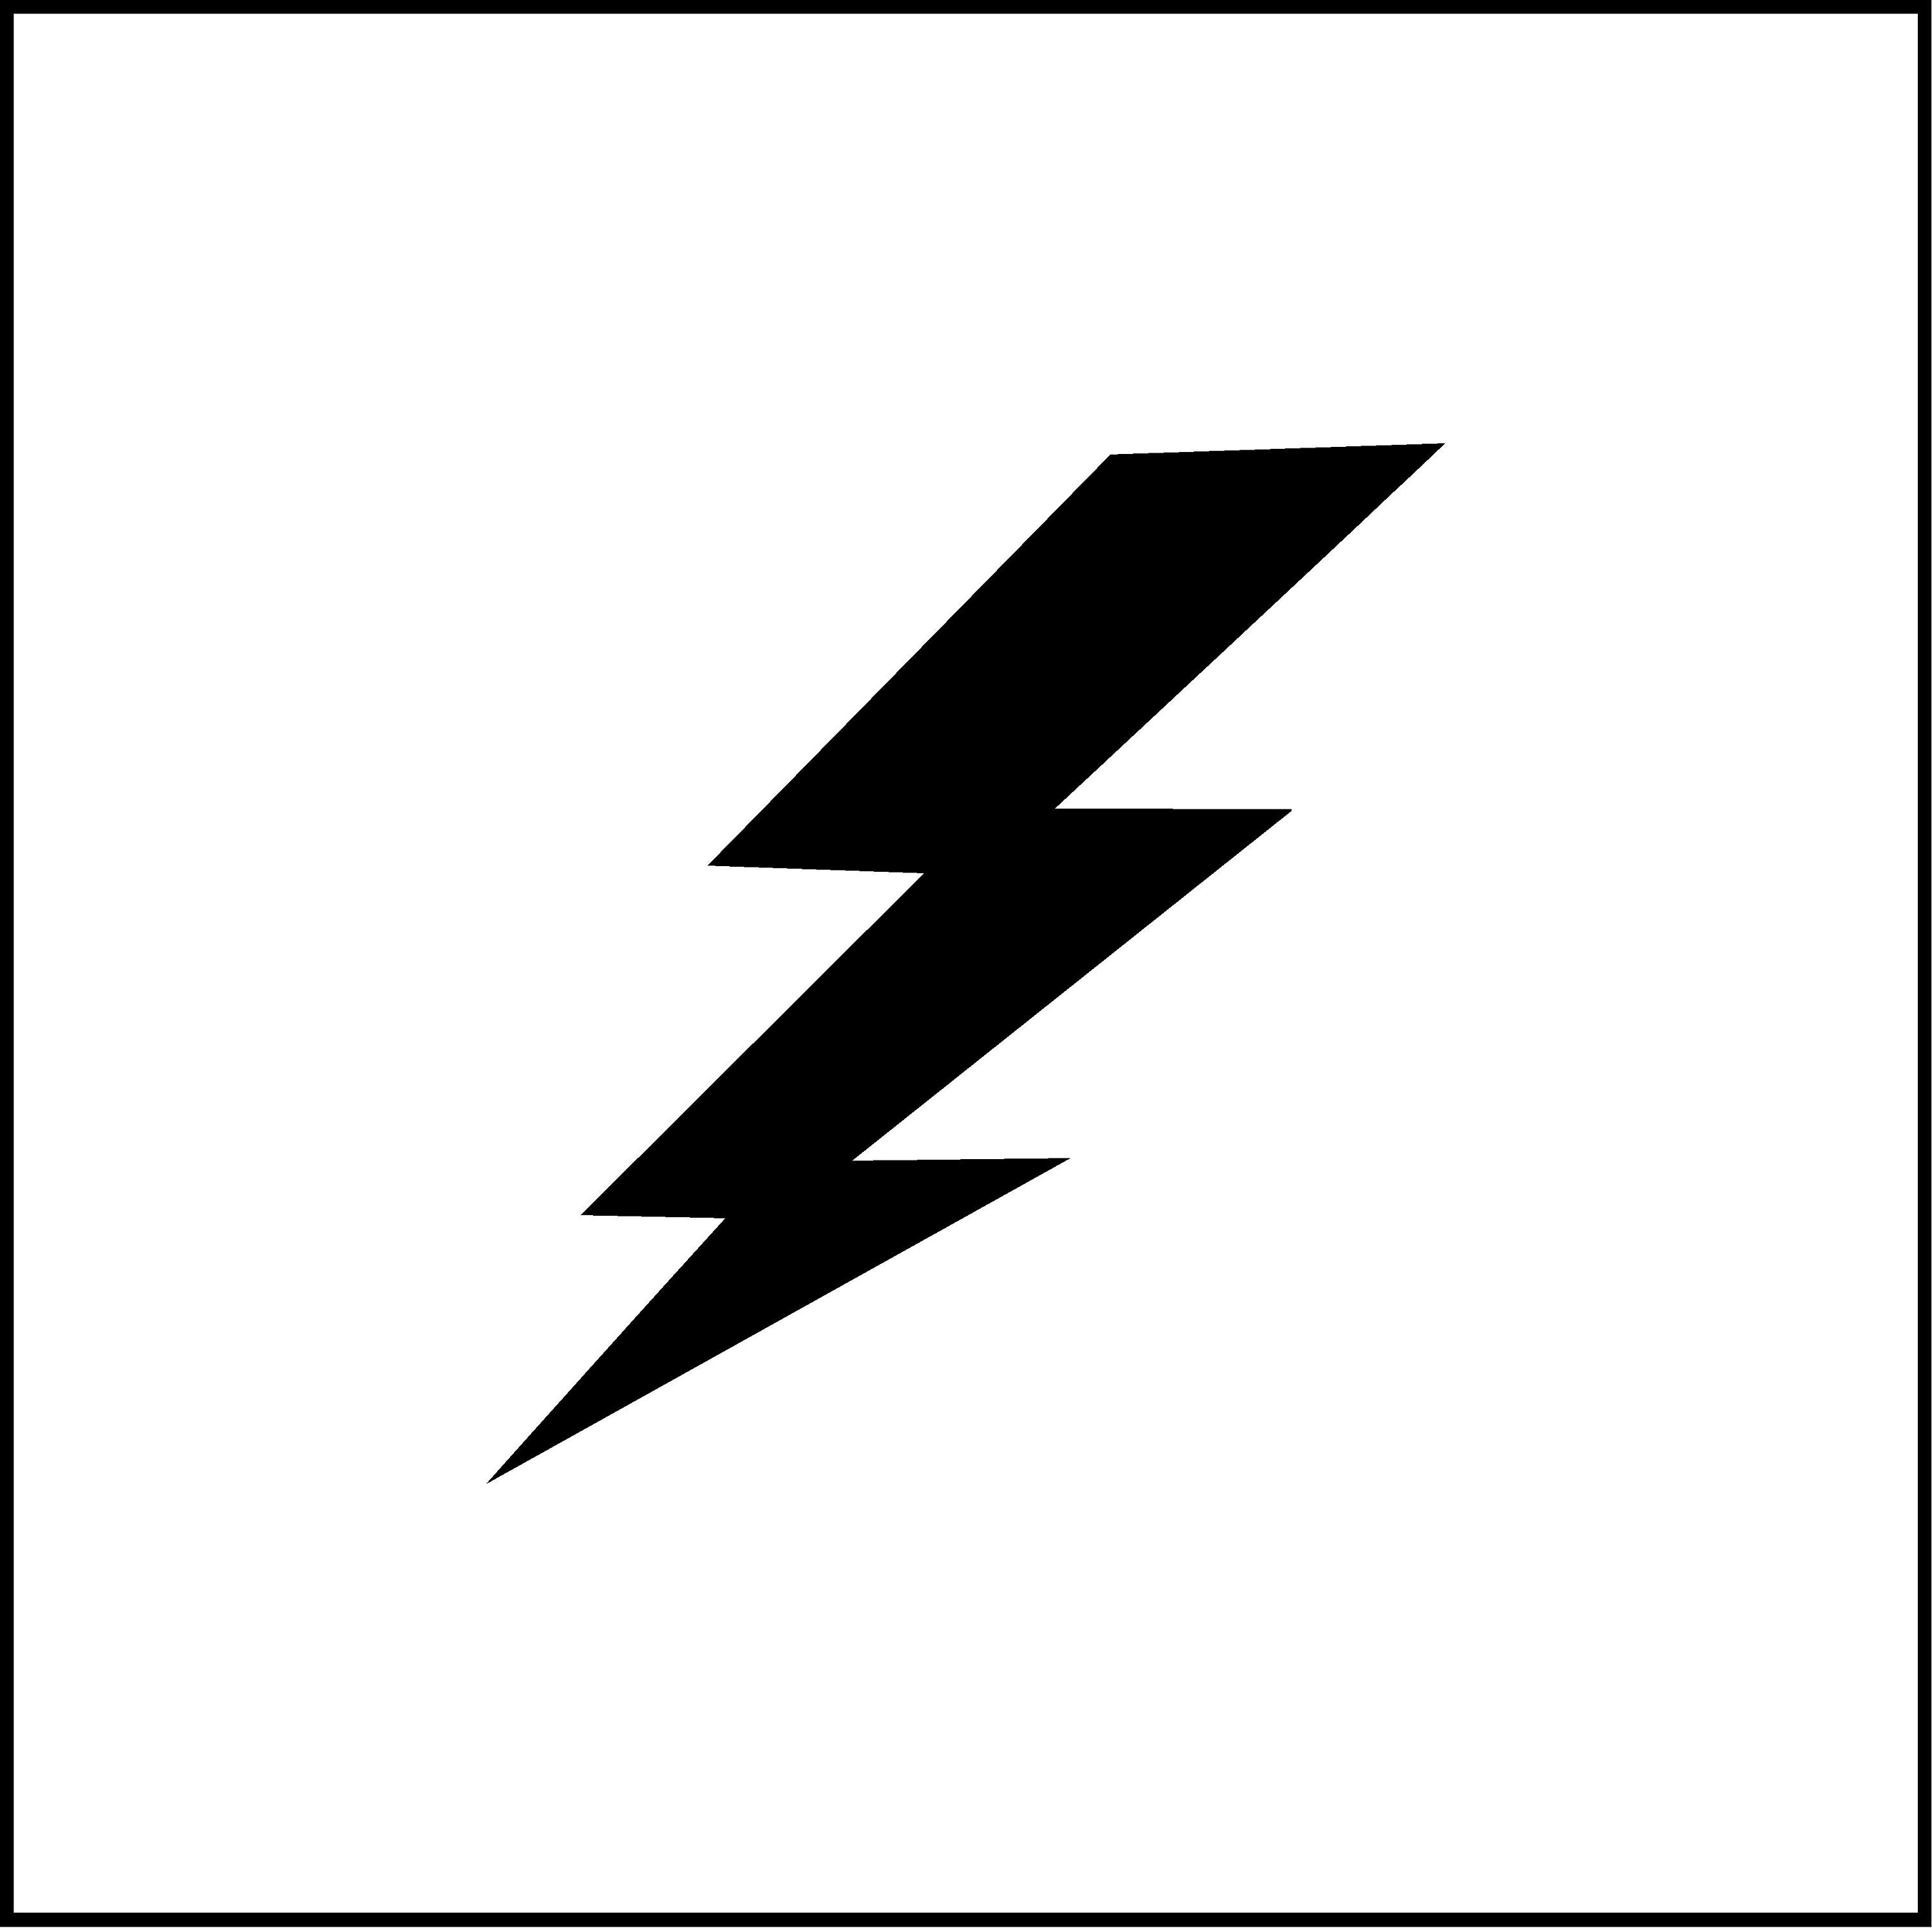  Lightning Bolt NOK Decal Vinyl Sticker